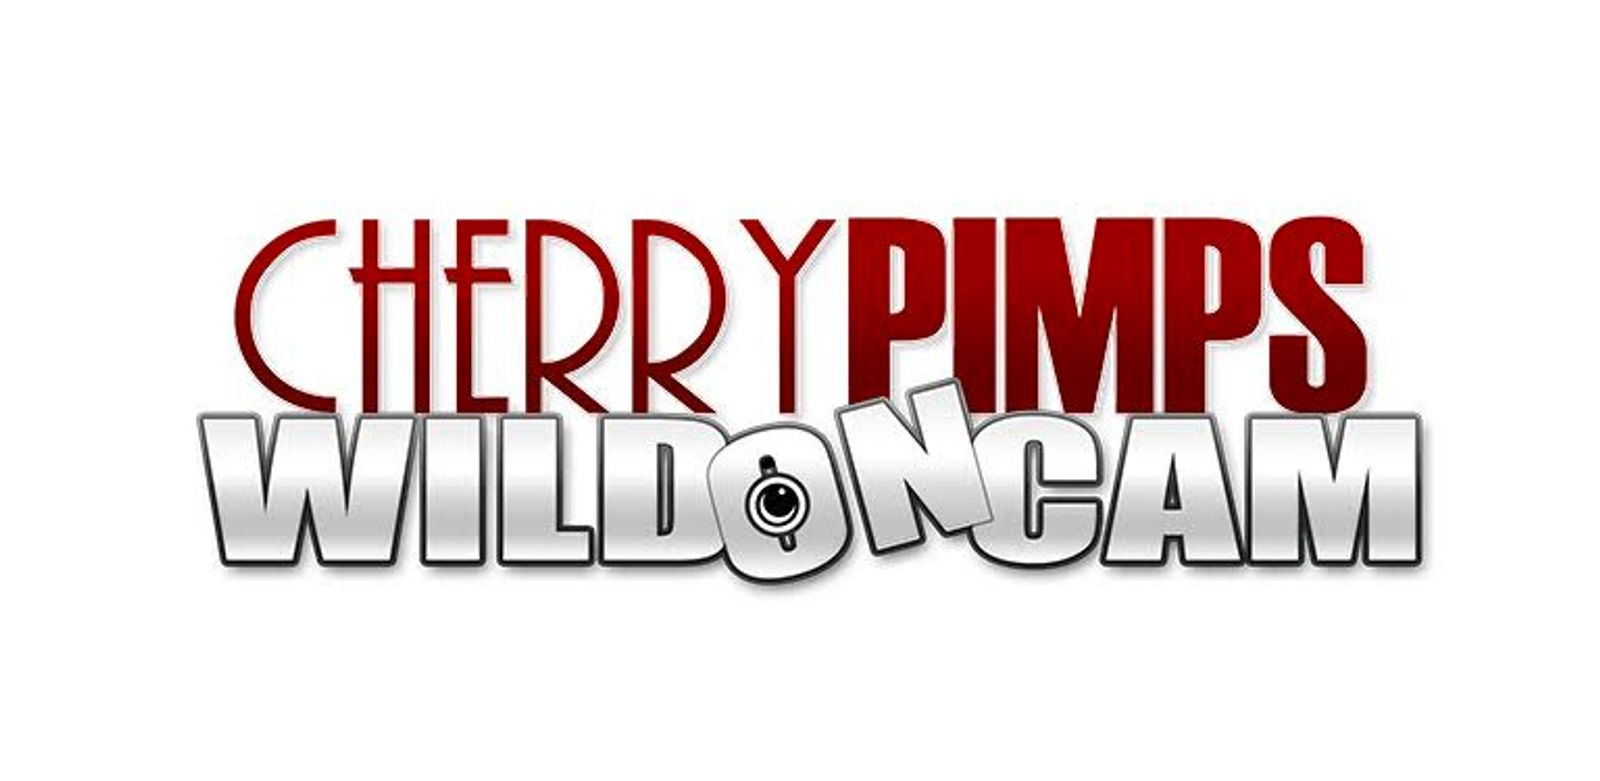 Cherry Pimps' WildonCam Announces 3 Action Packed Shows